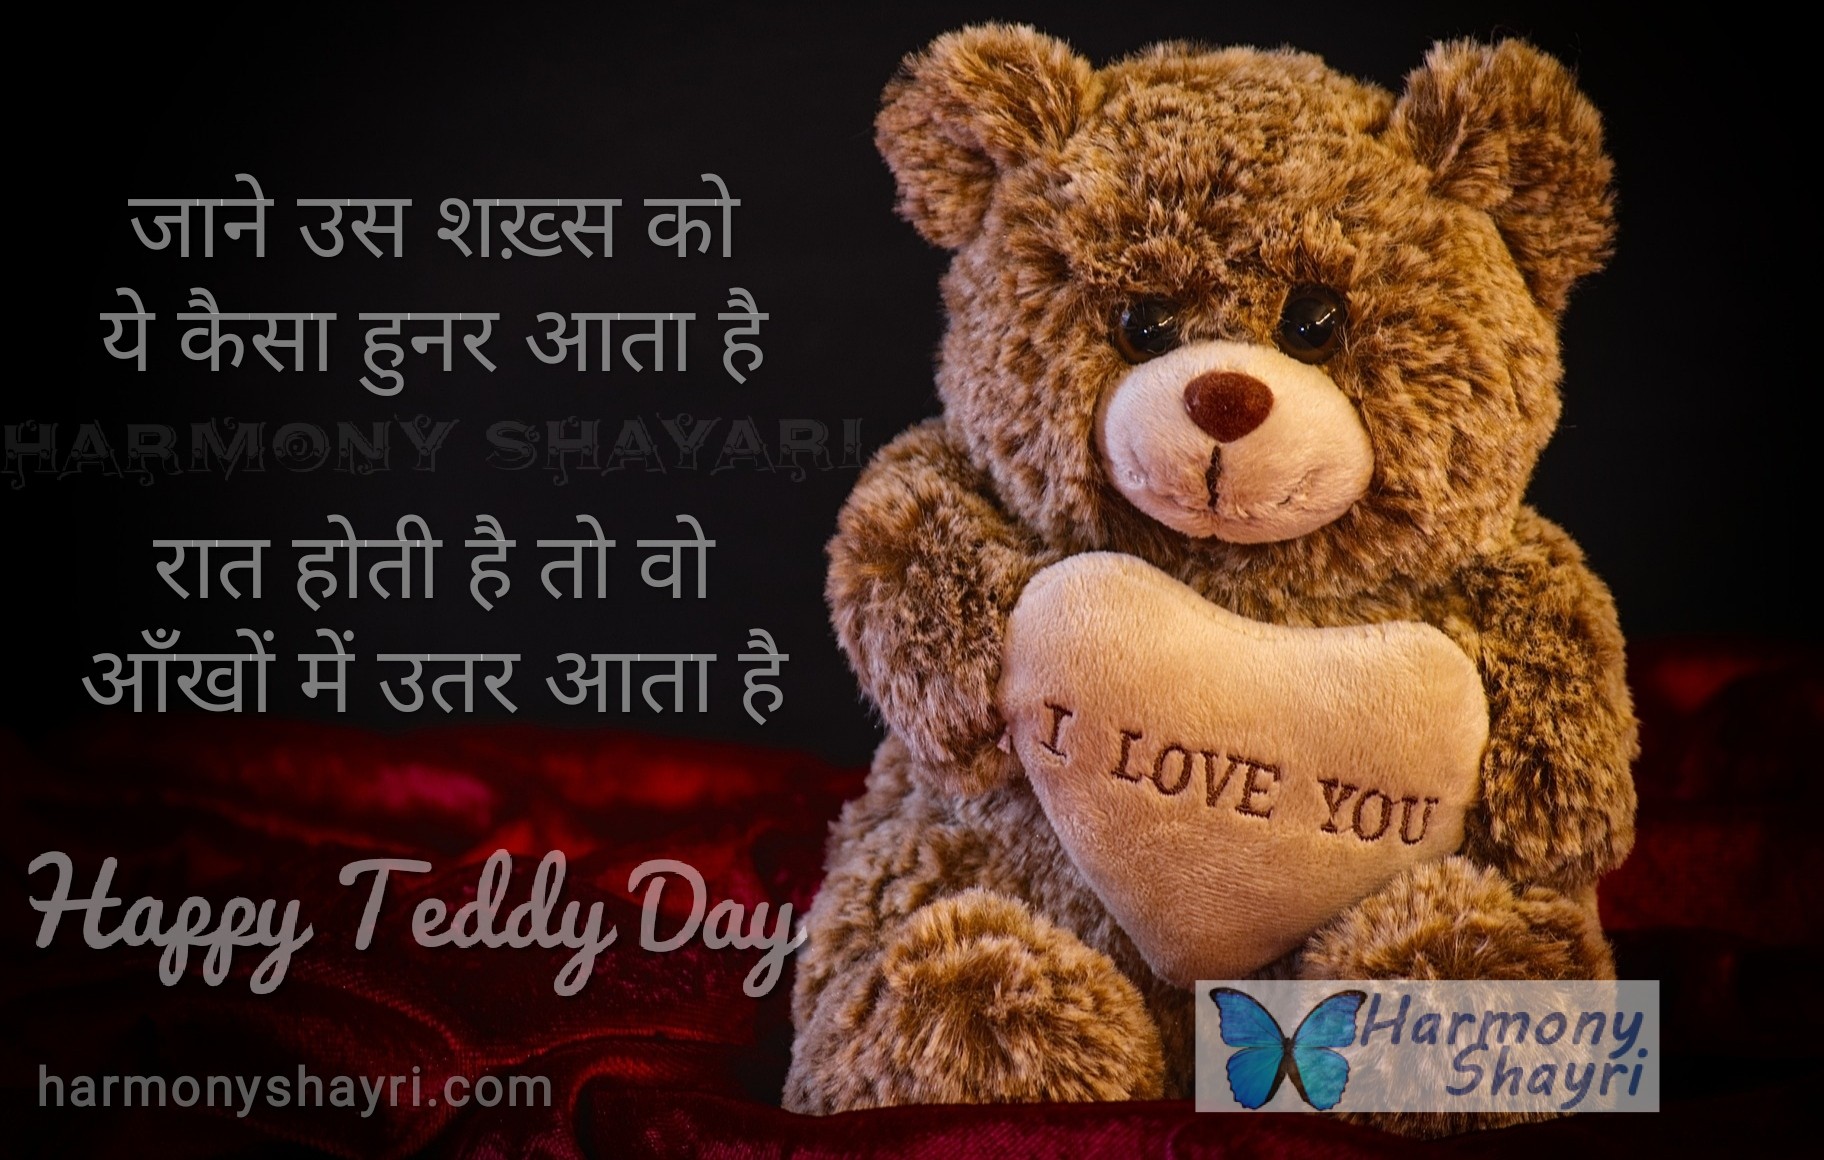 Jane us shaksh ko ye kaisa hunar aata hai – Happy Teddy Day